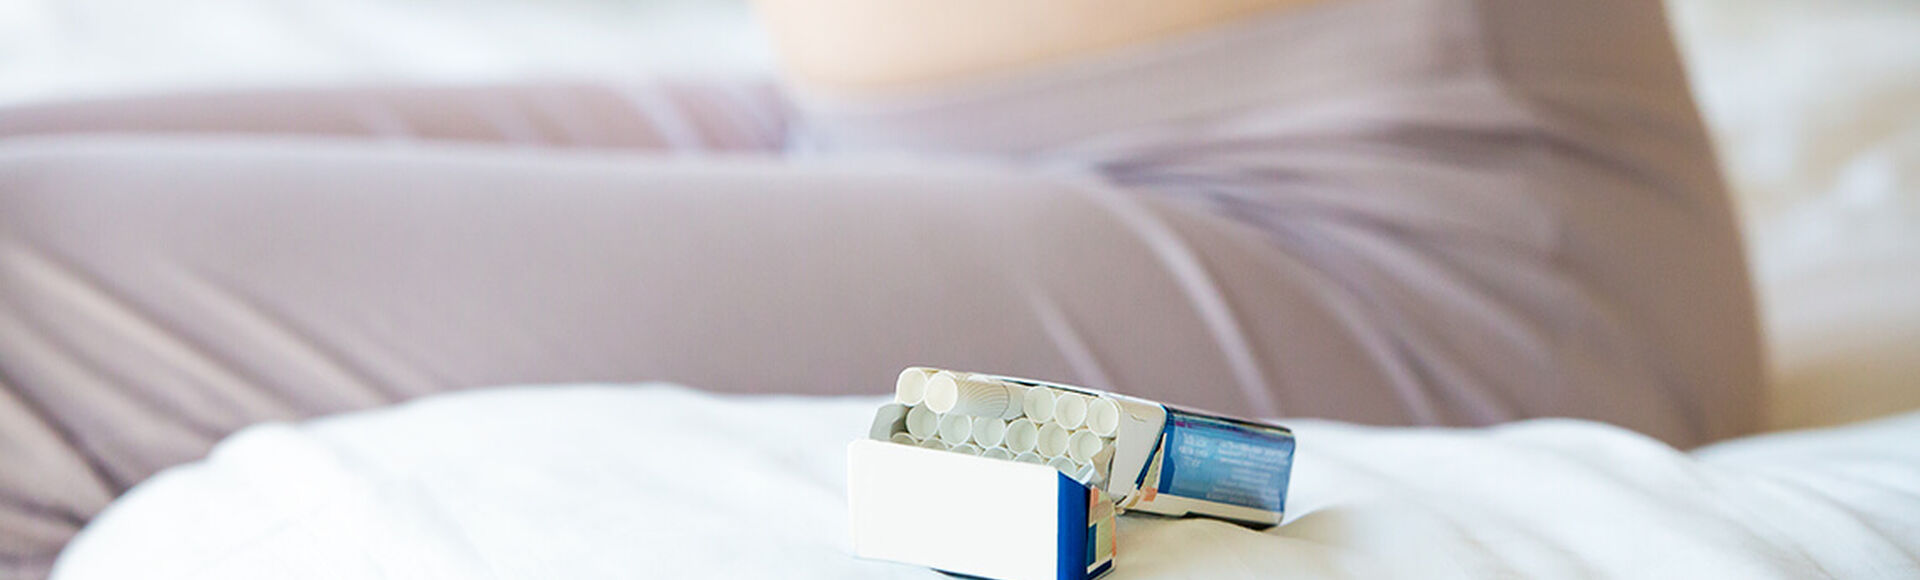 Consequências do tabagismo durante a gravidez